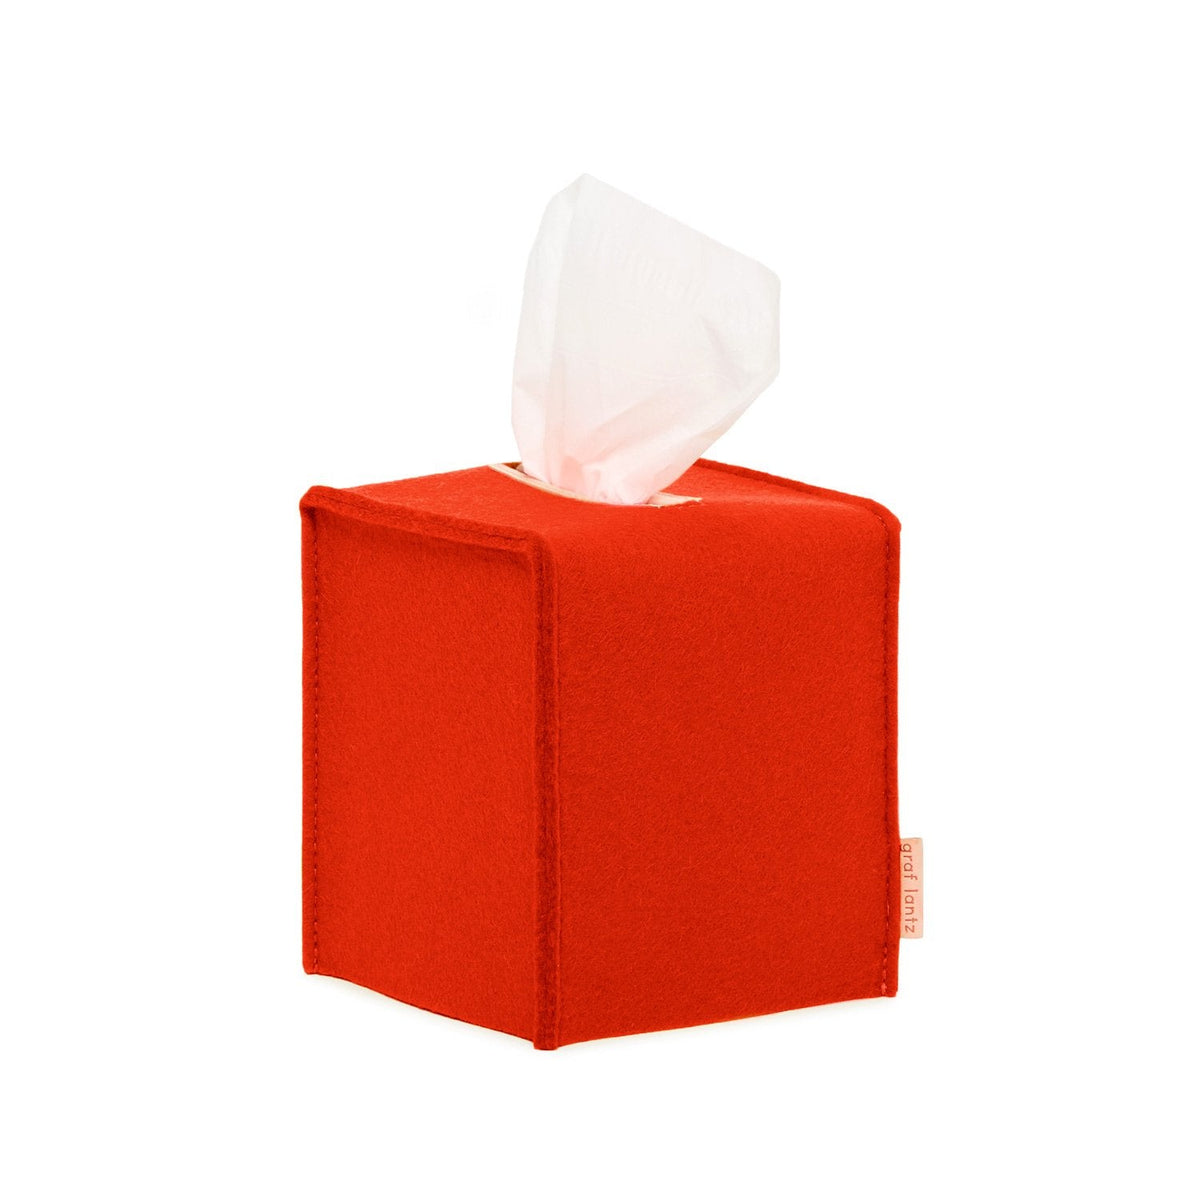 Tissue Box Cover - Small Orange